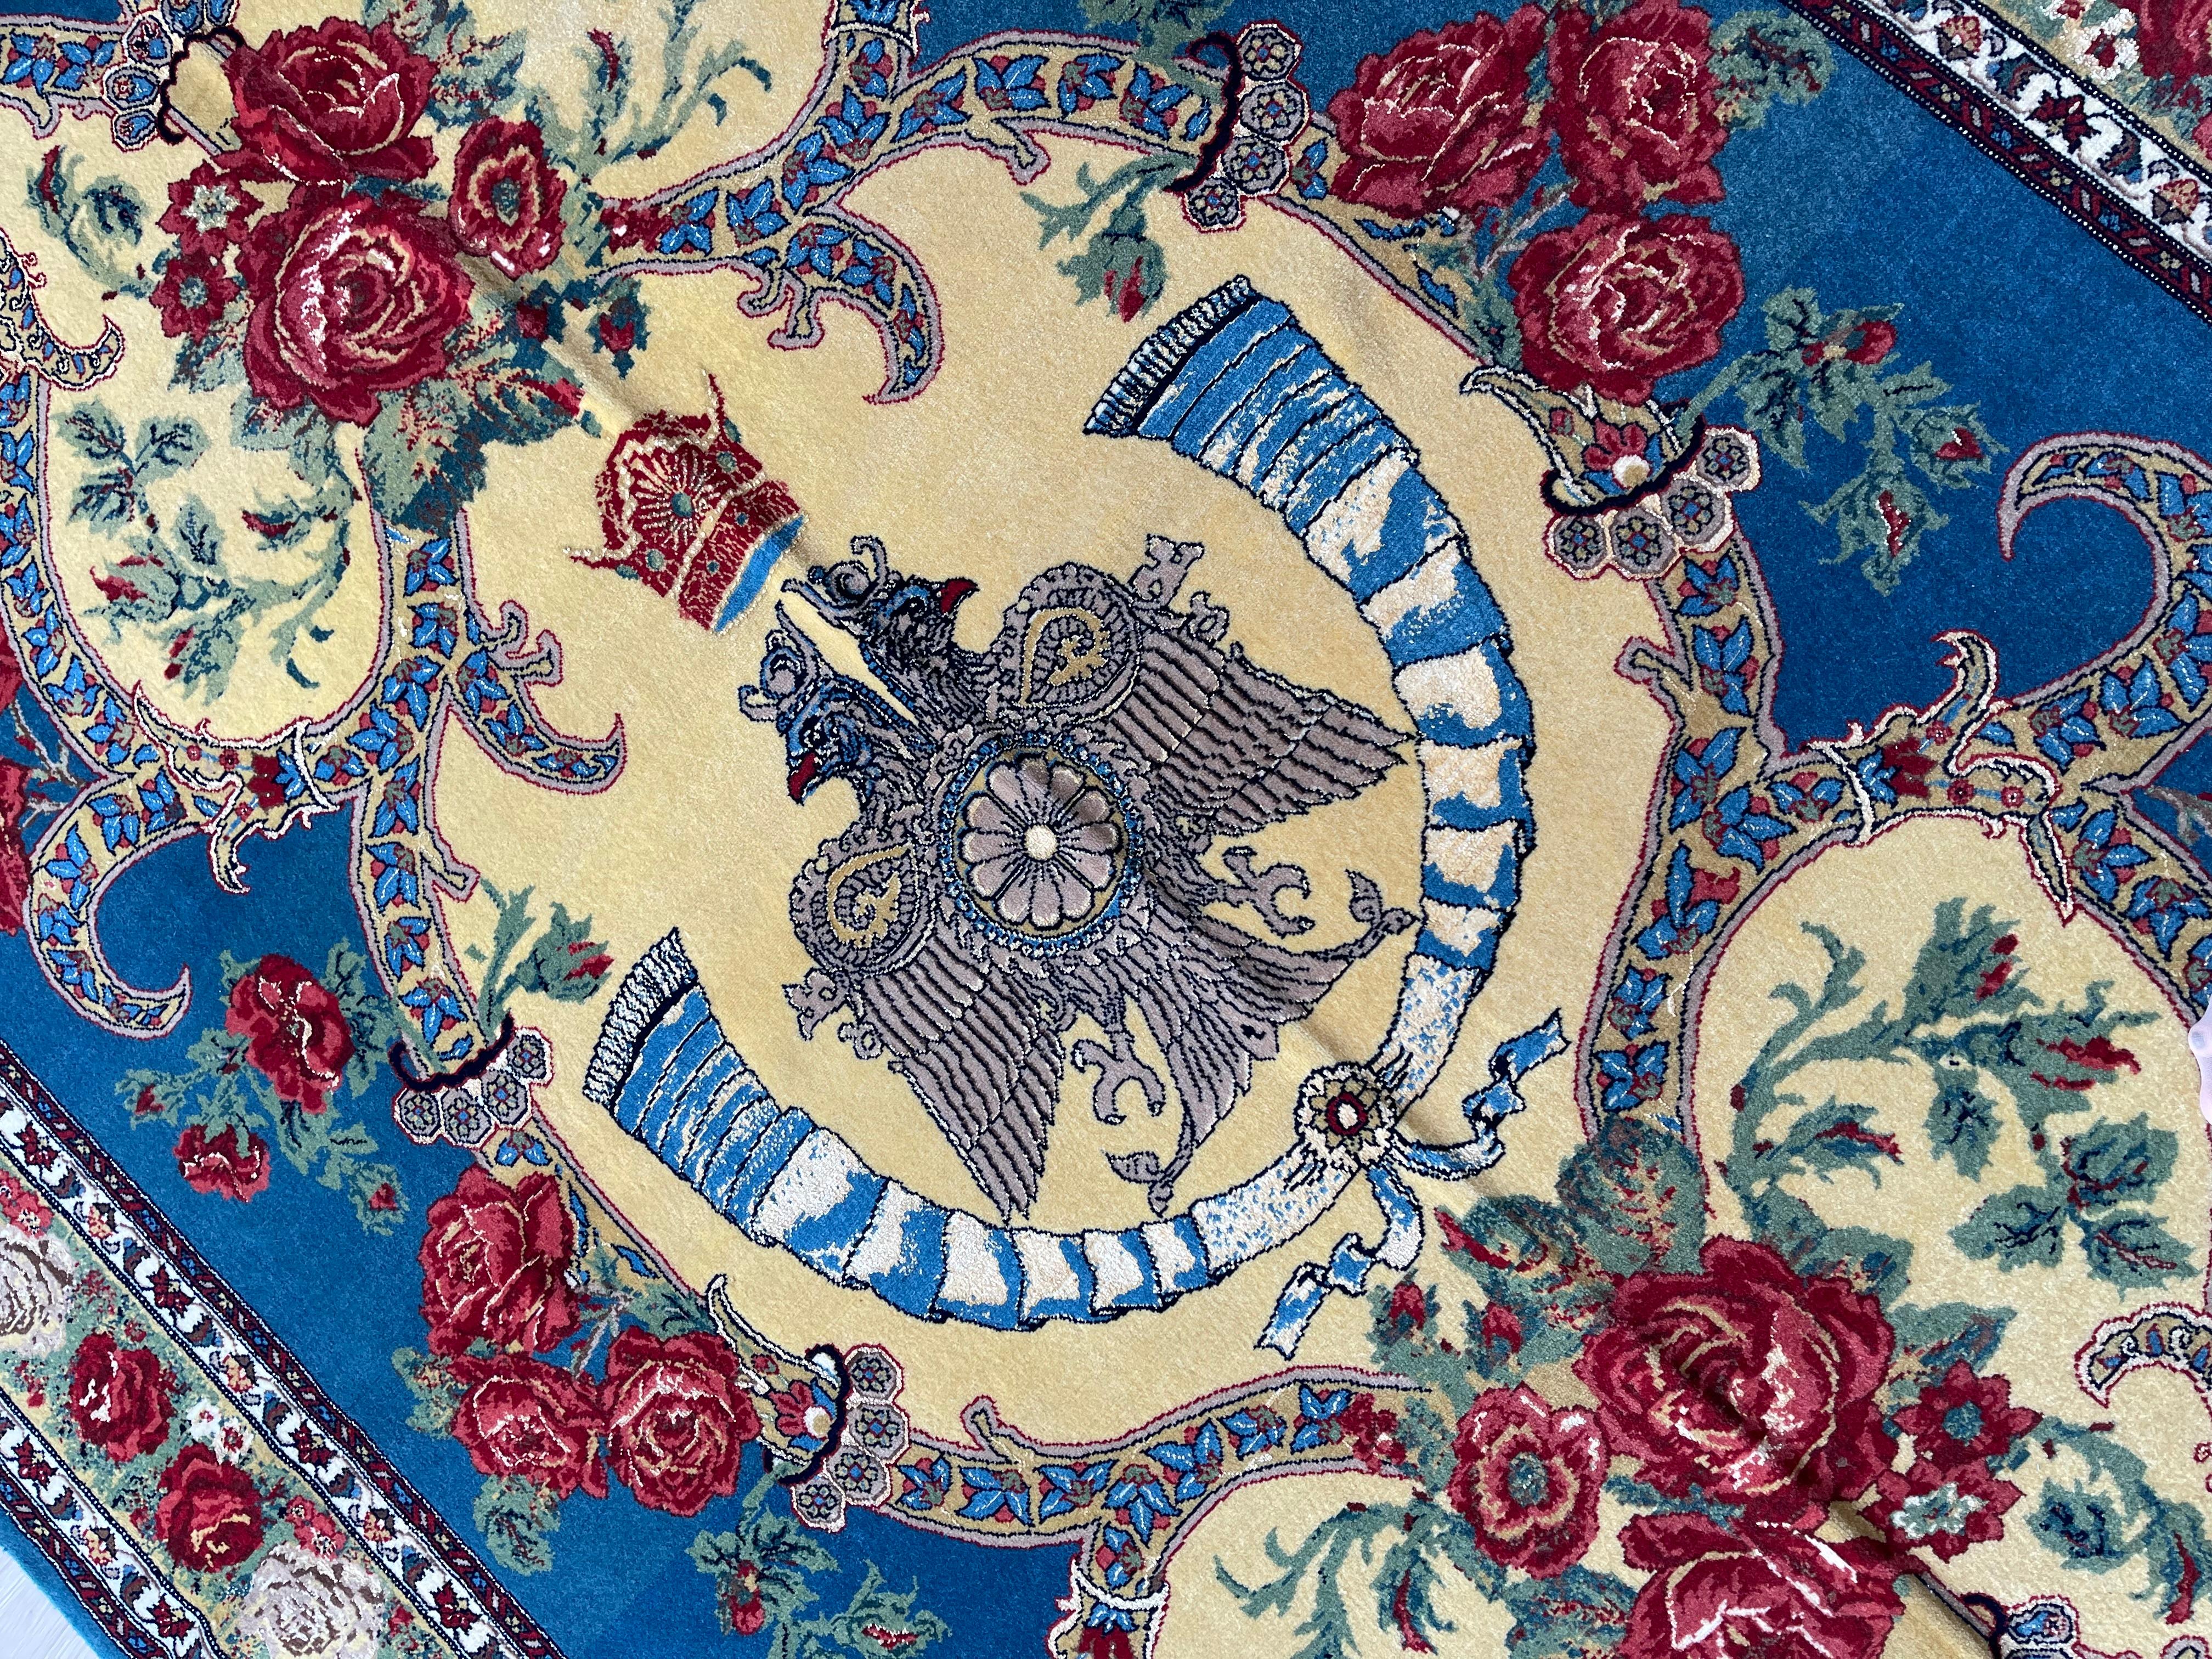 Matériaux organiques Tapis à fleurs exclusif, tapis bleu en soie tissé à la main, tapis oriental kurde symbolique en vente